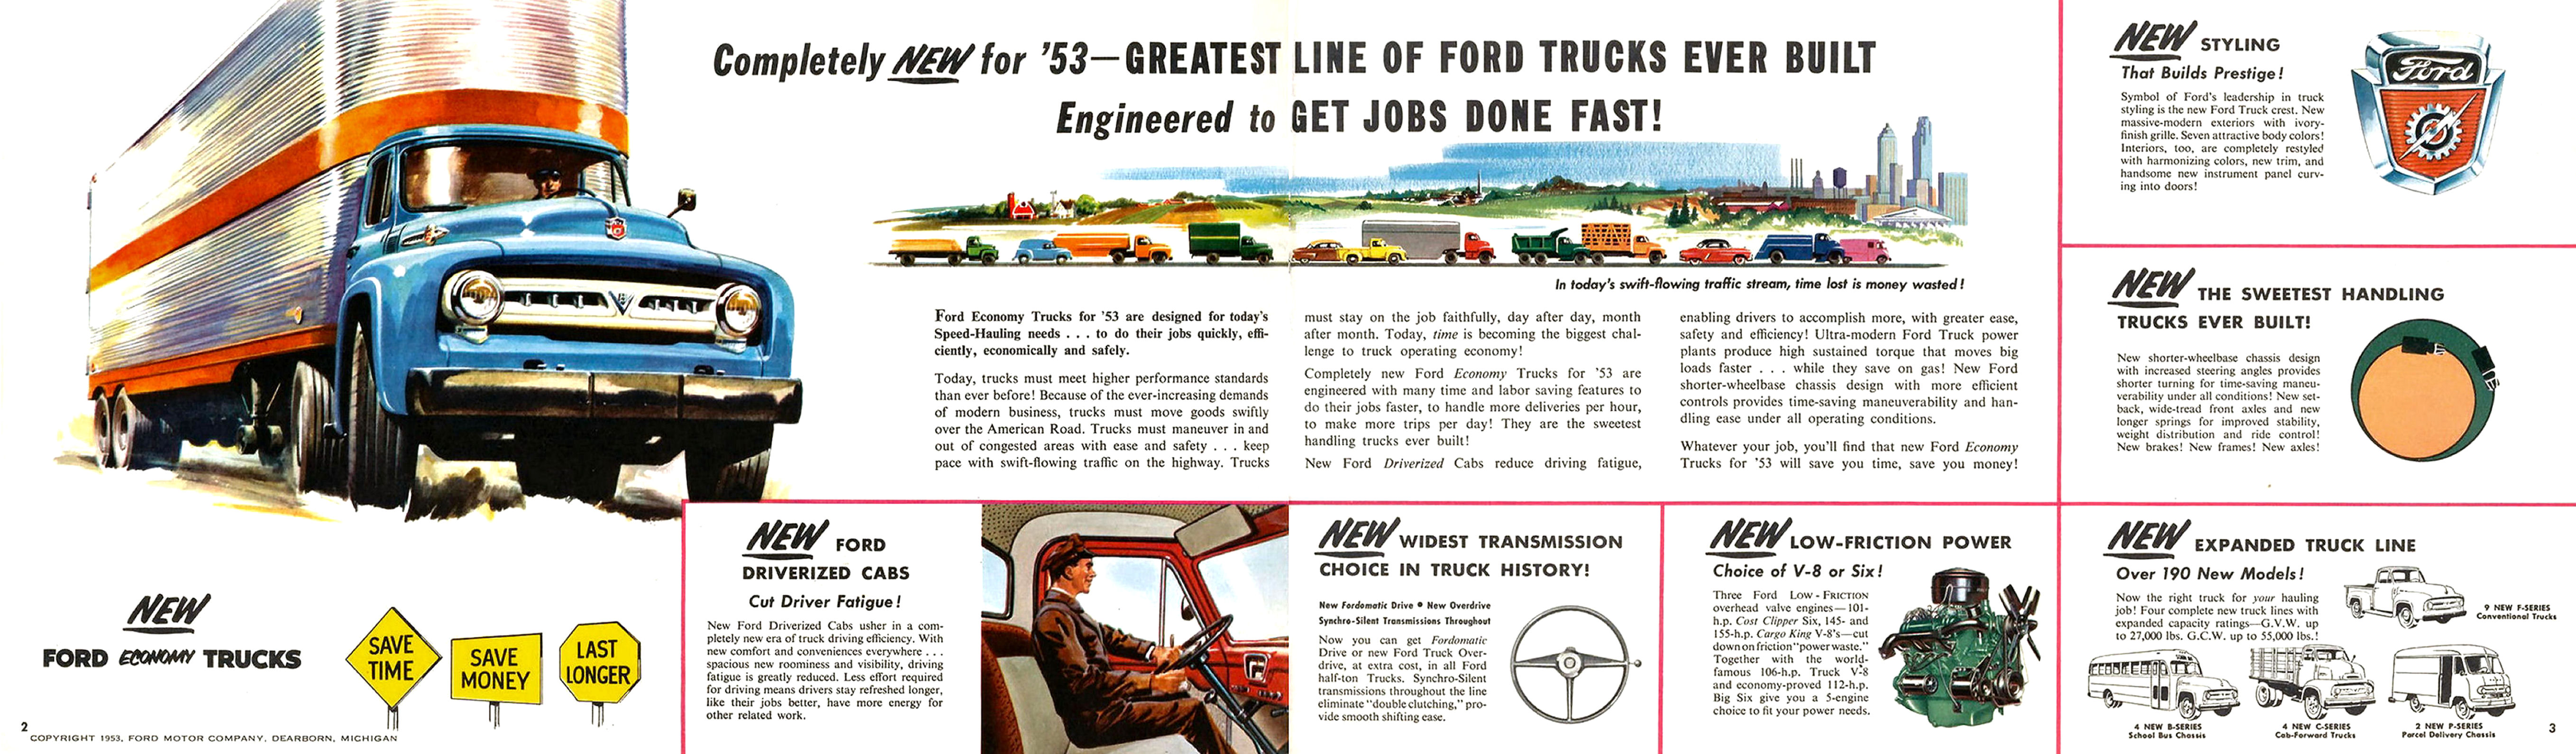 1953_Ford_Trucks_Full_Line-02-03